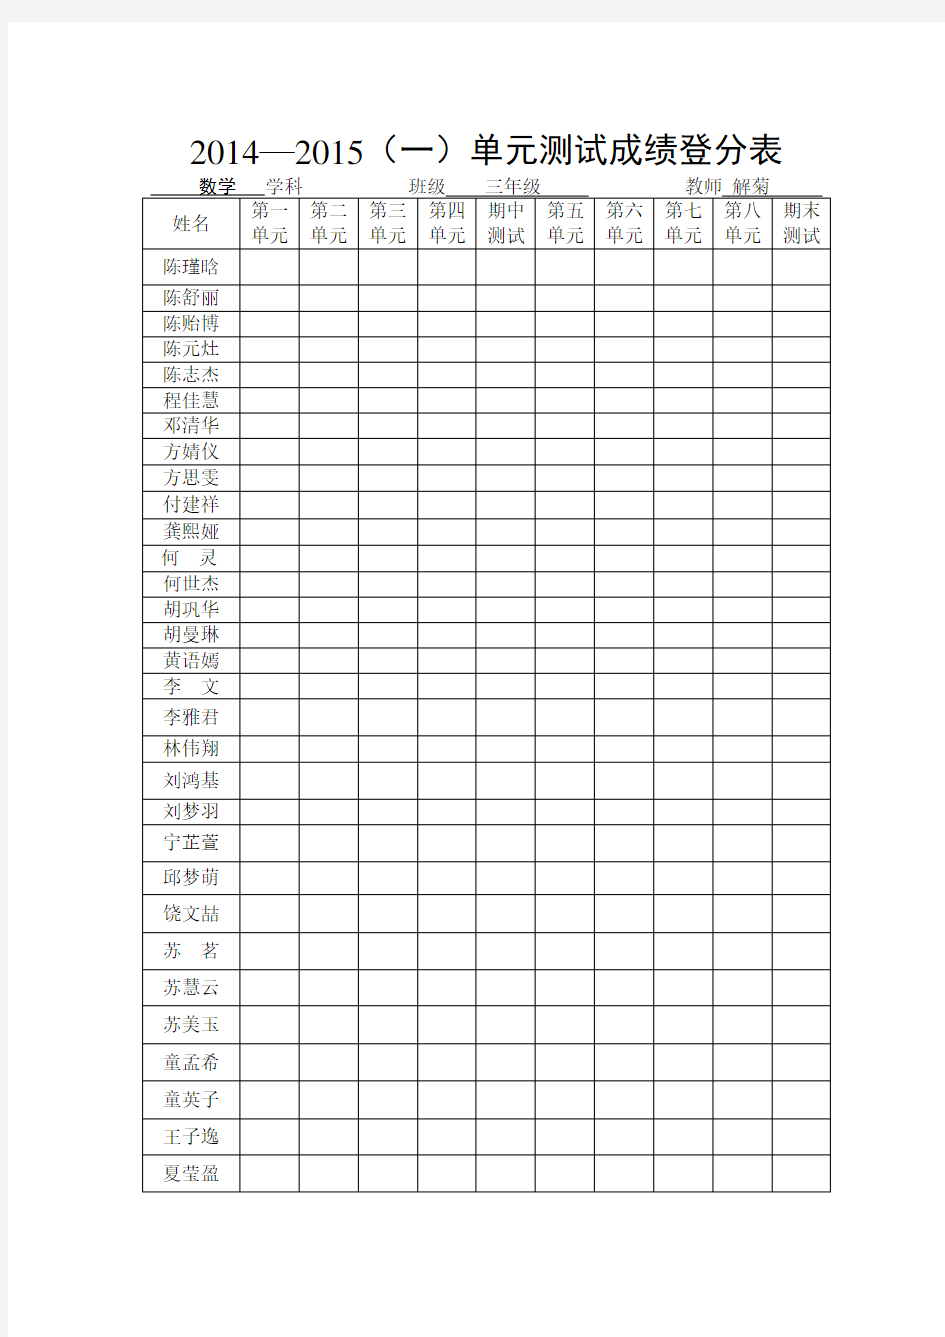 数学语文单元测试成绩登分表